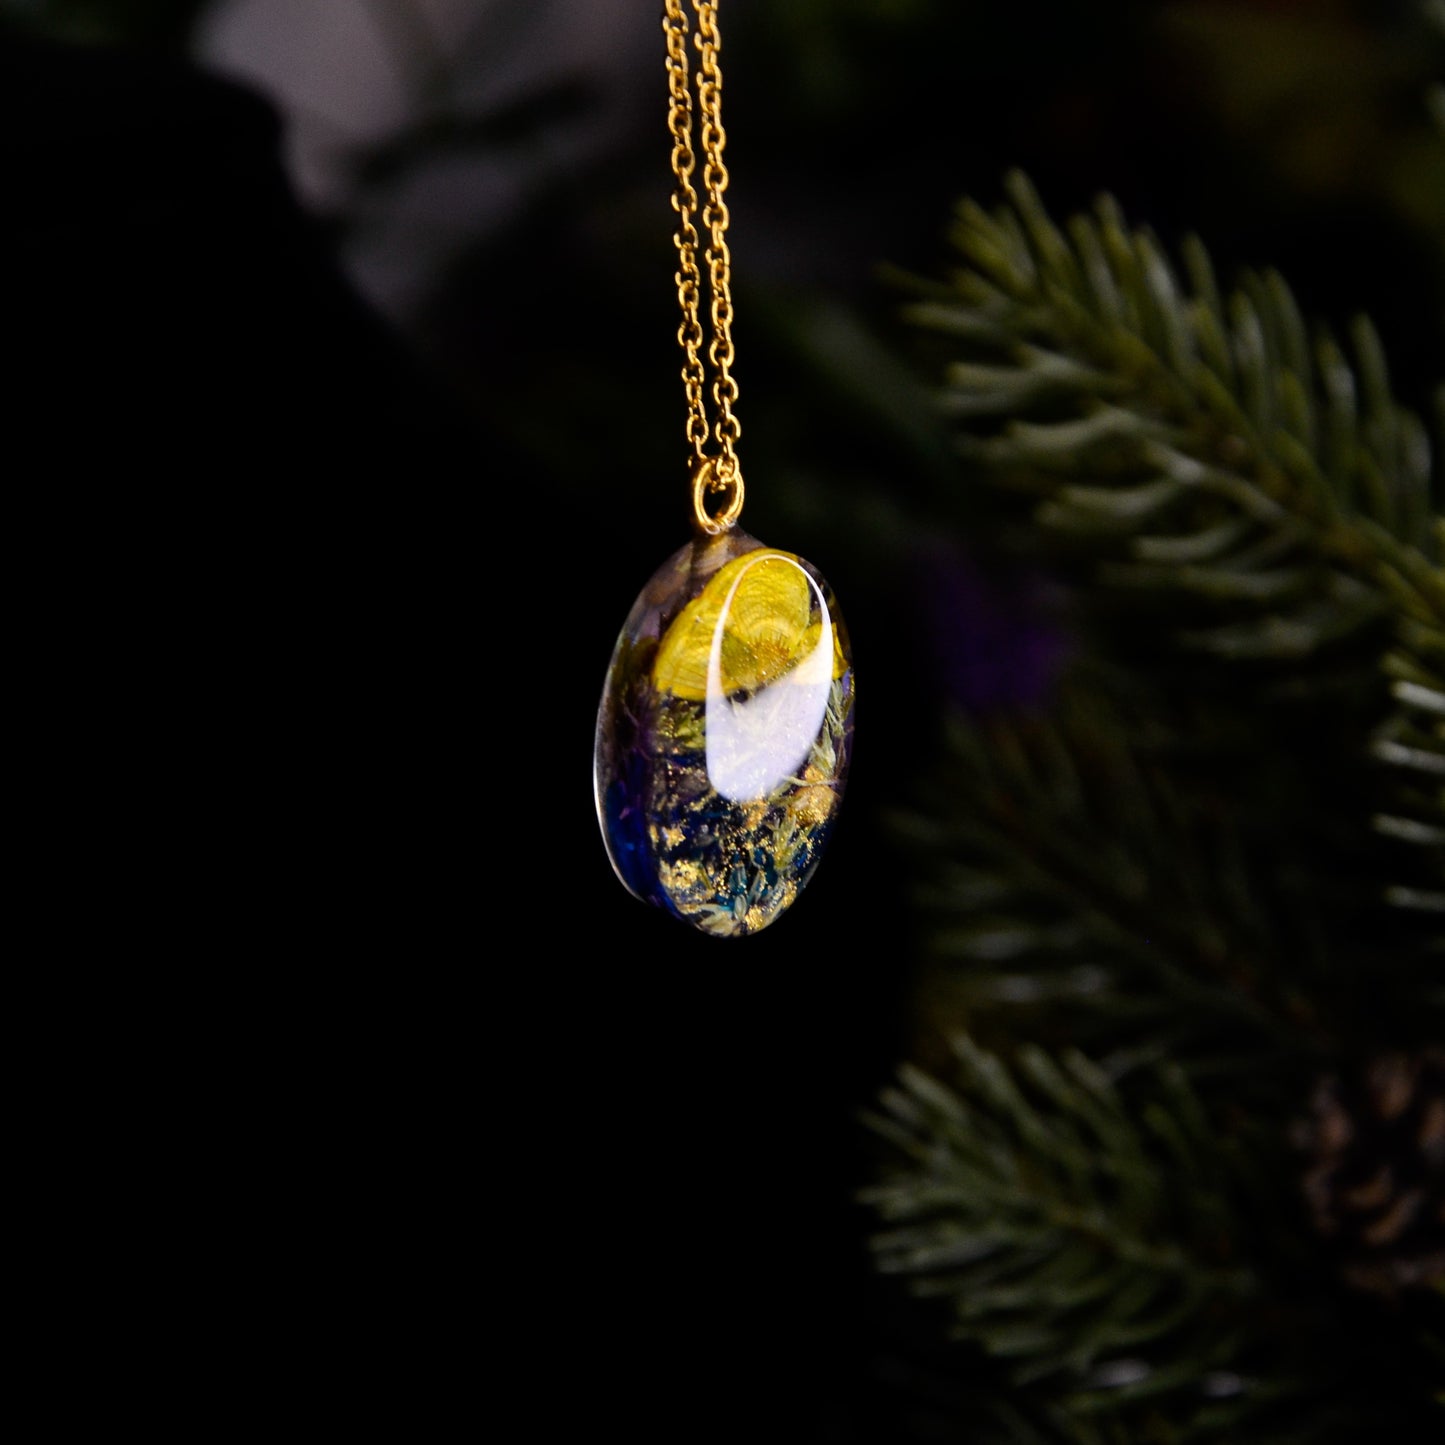 Naszyjnik owalny z kompozycją kwiatową i jaskrem na górze - kolor złoty, fioletowy